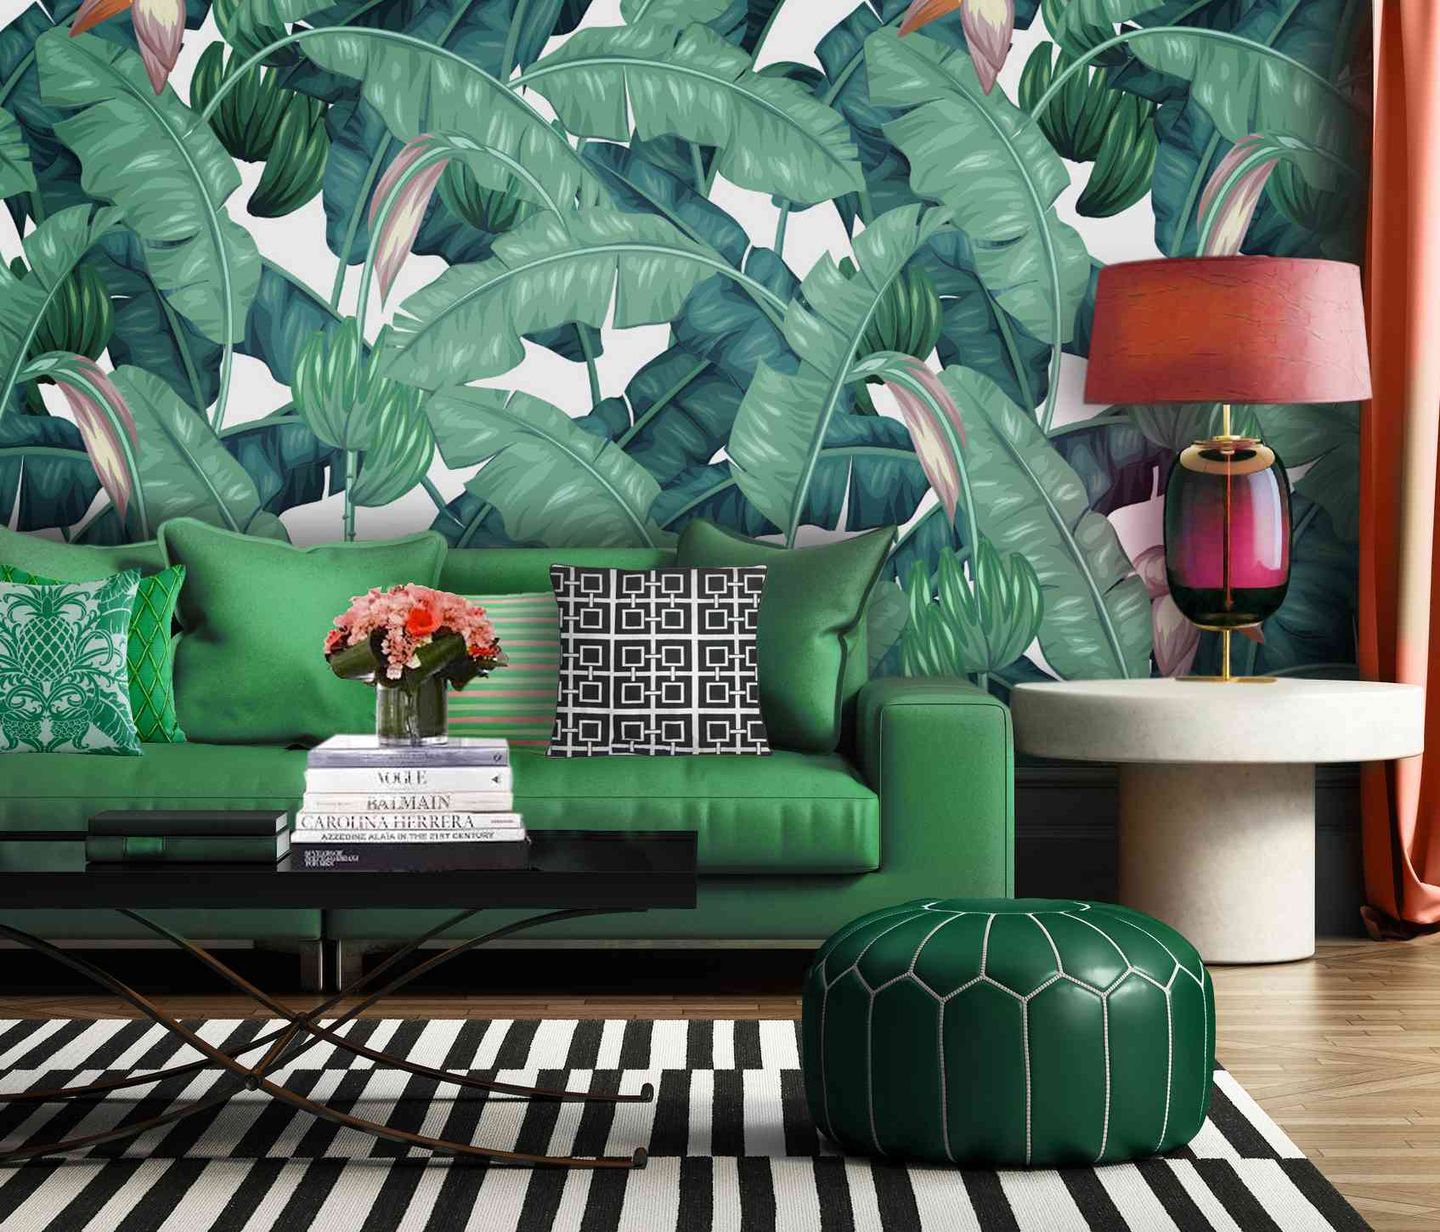 Untuk memberikan kesan segar pada ruangan, wallpaper bermotif tropical dapat dijadikan pilihan.